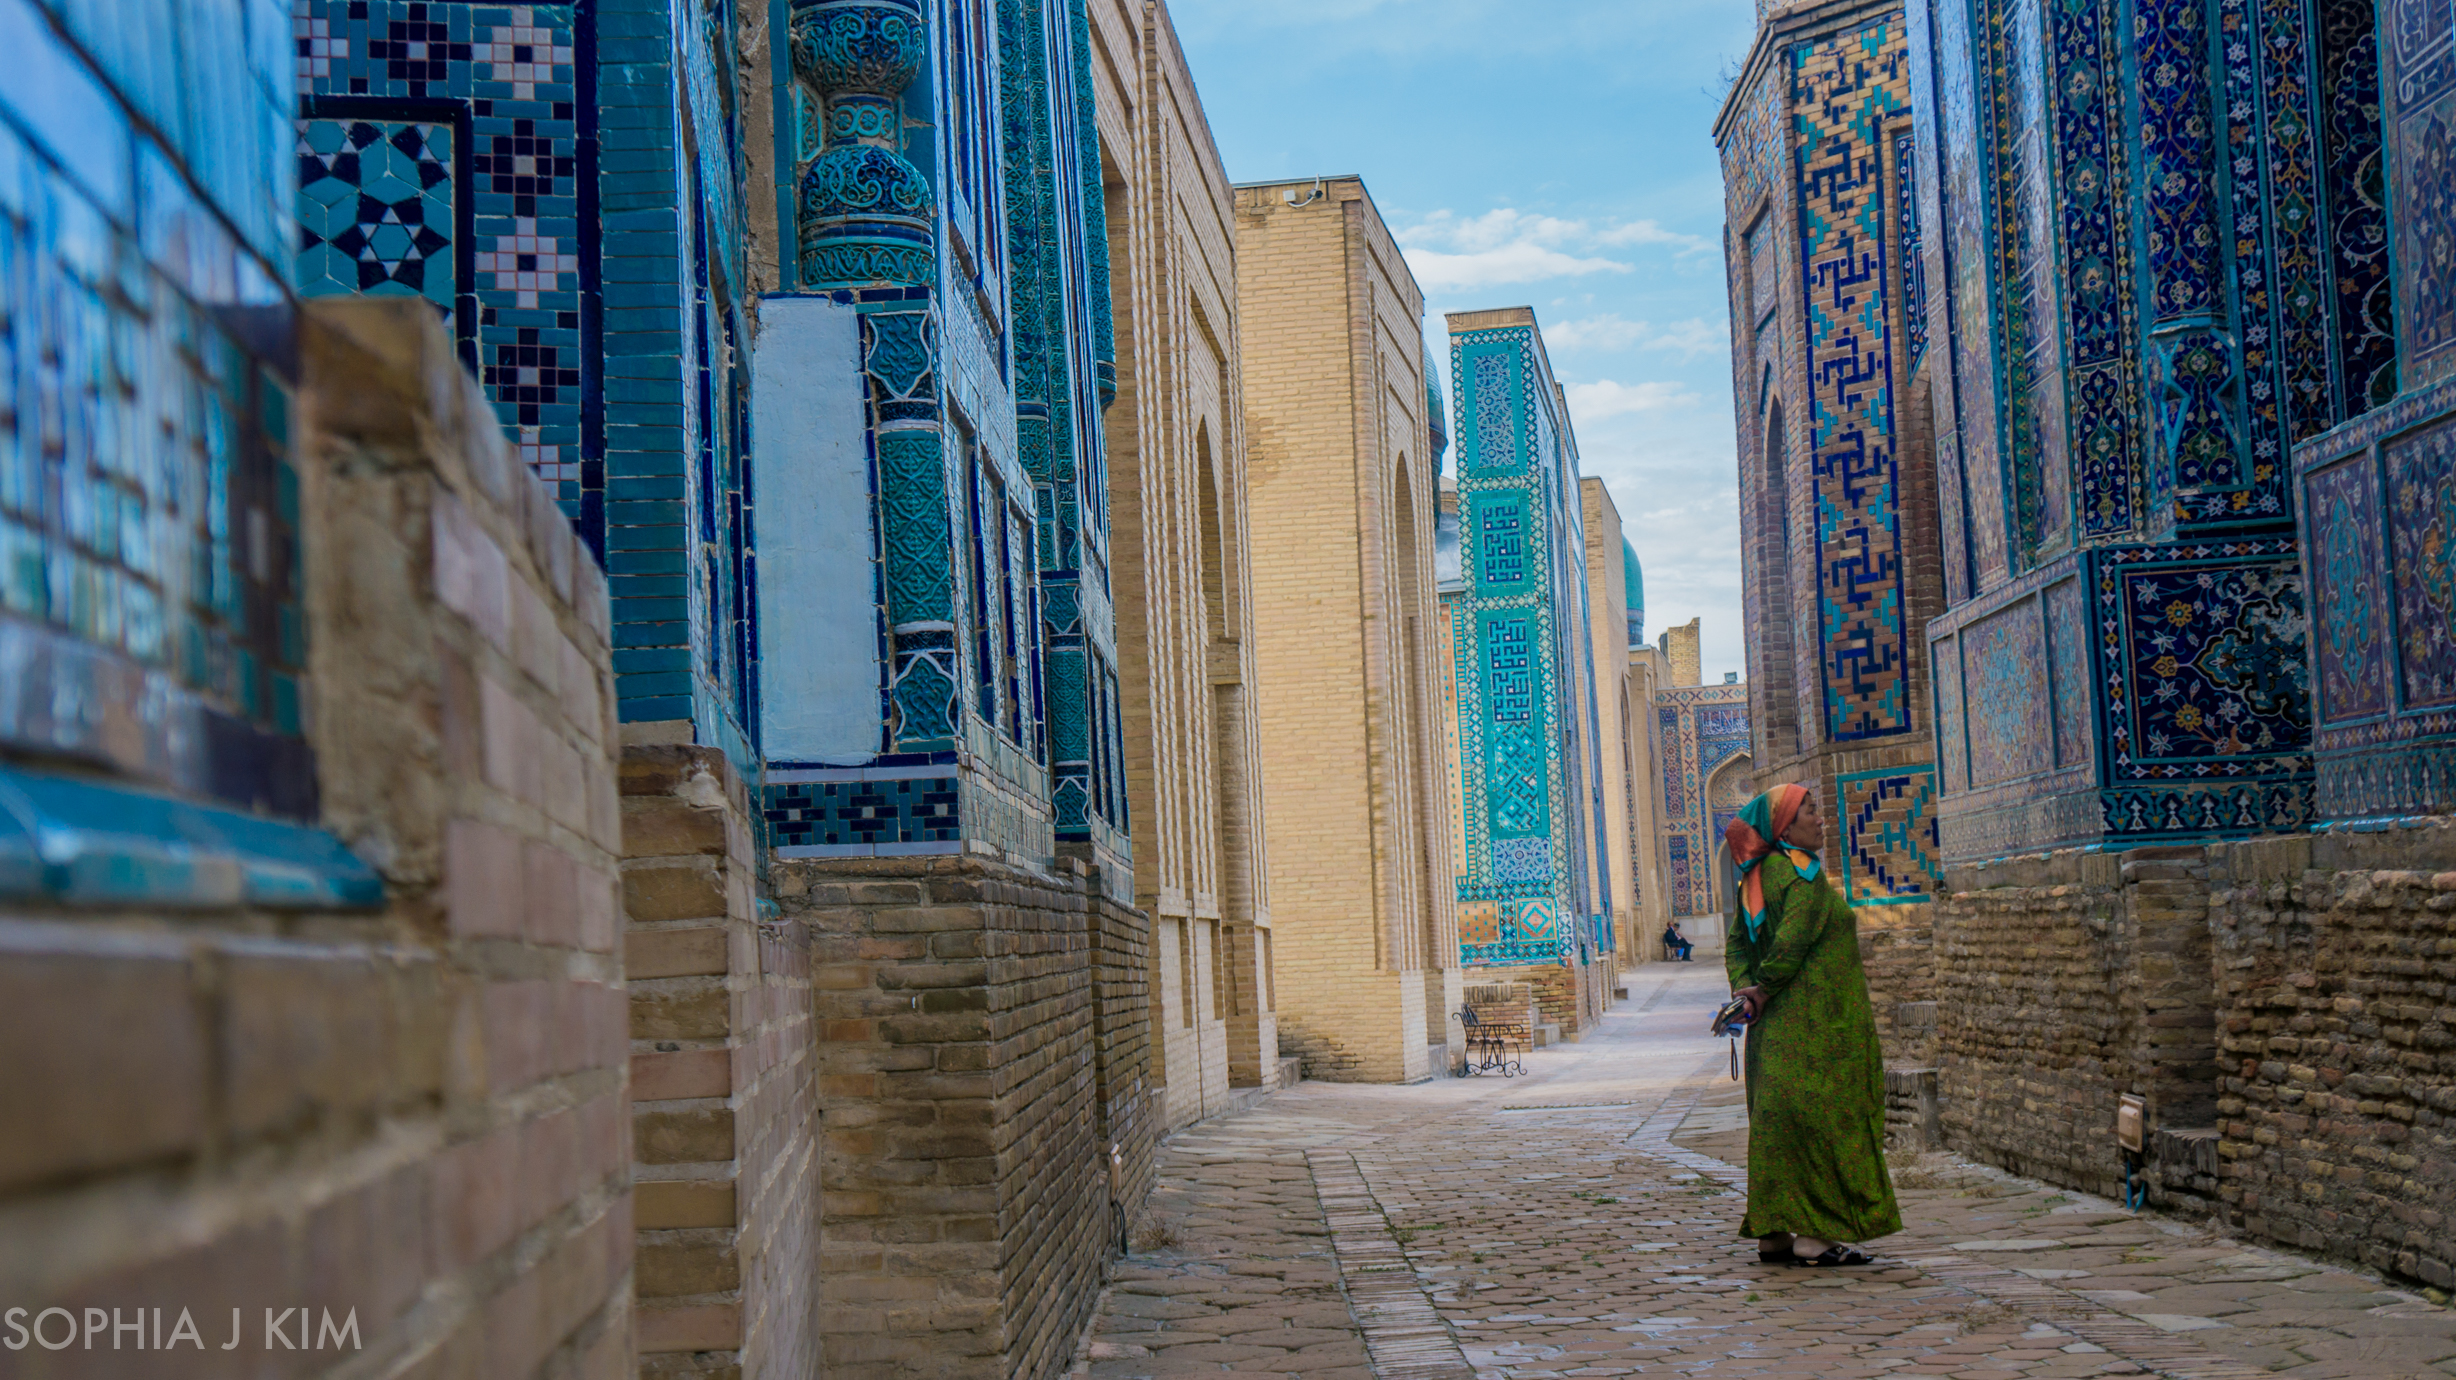 Uzkbek Woman at Shah-i-Zhinda, Uzbekistan